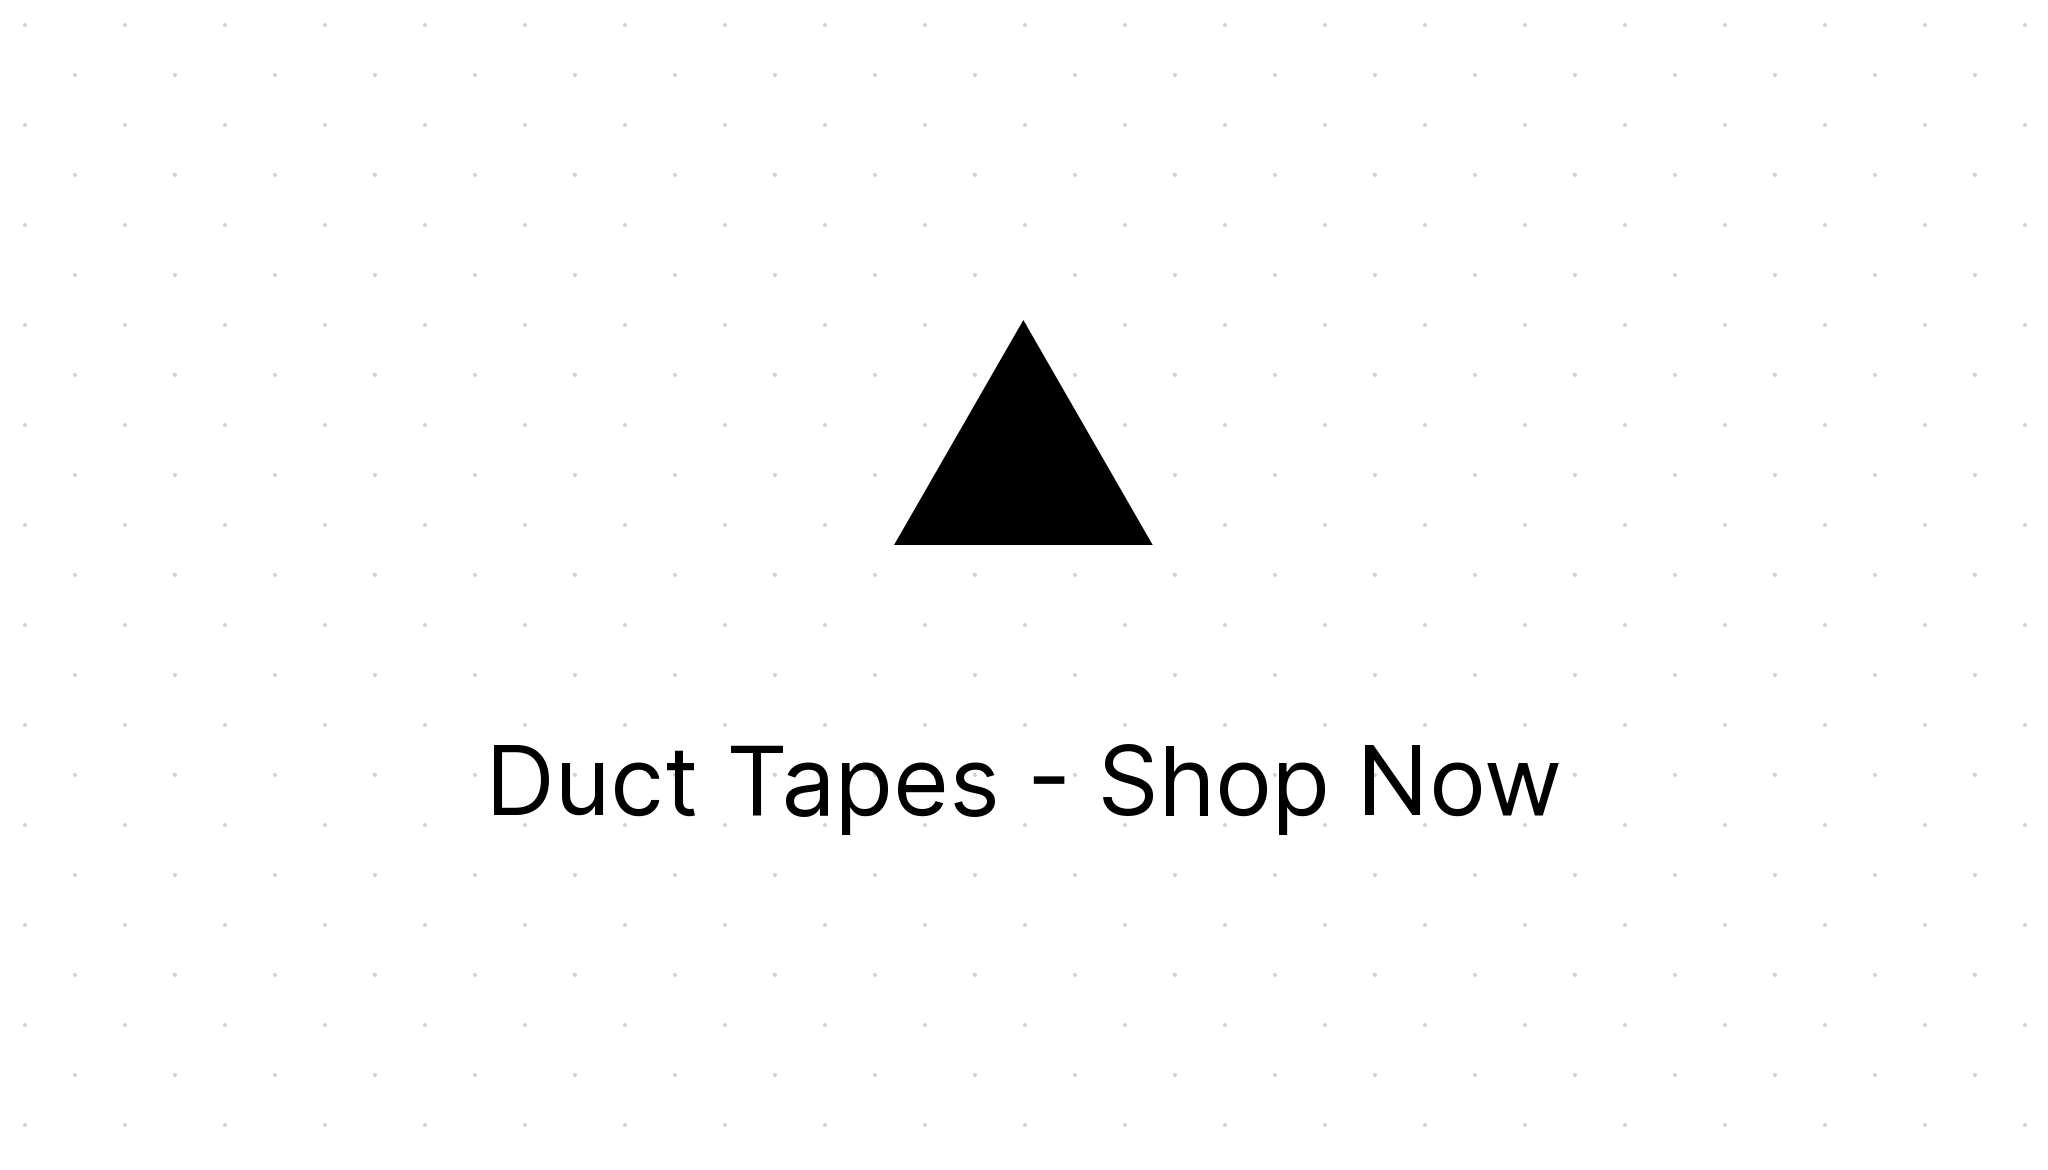 Tesa 4615 Duct Tape, 50m x 50mm, Silver, PE Coated Finish